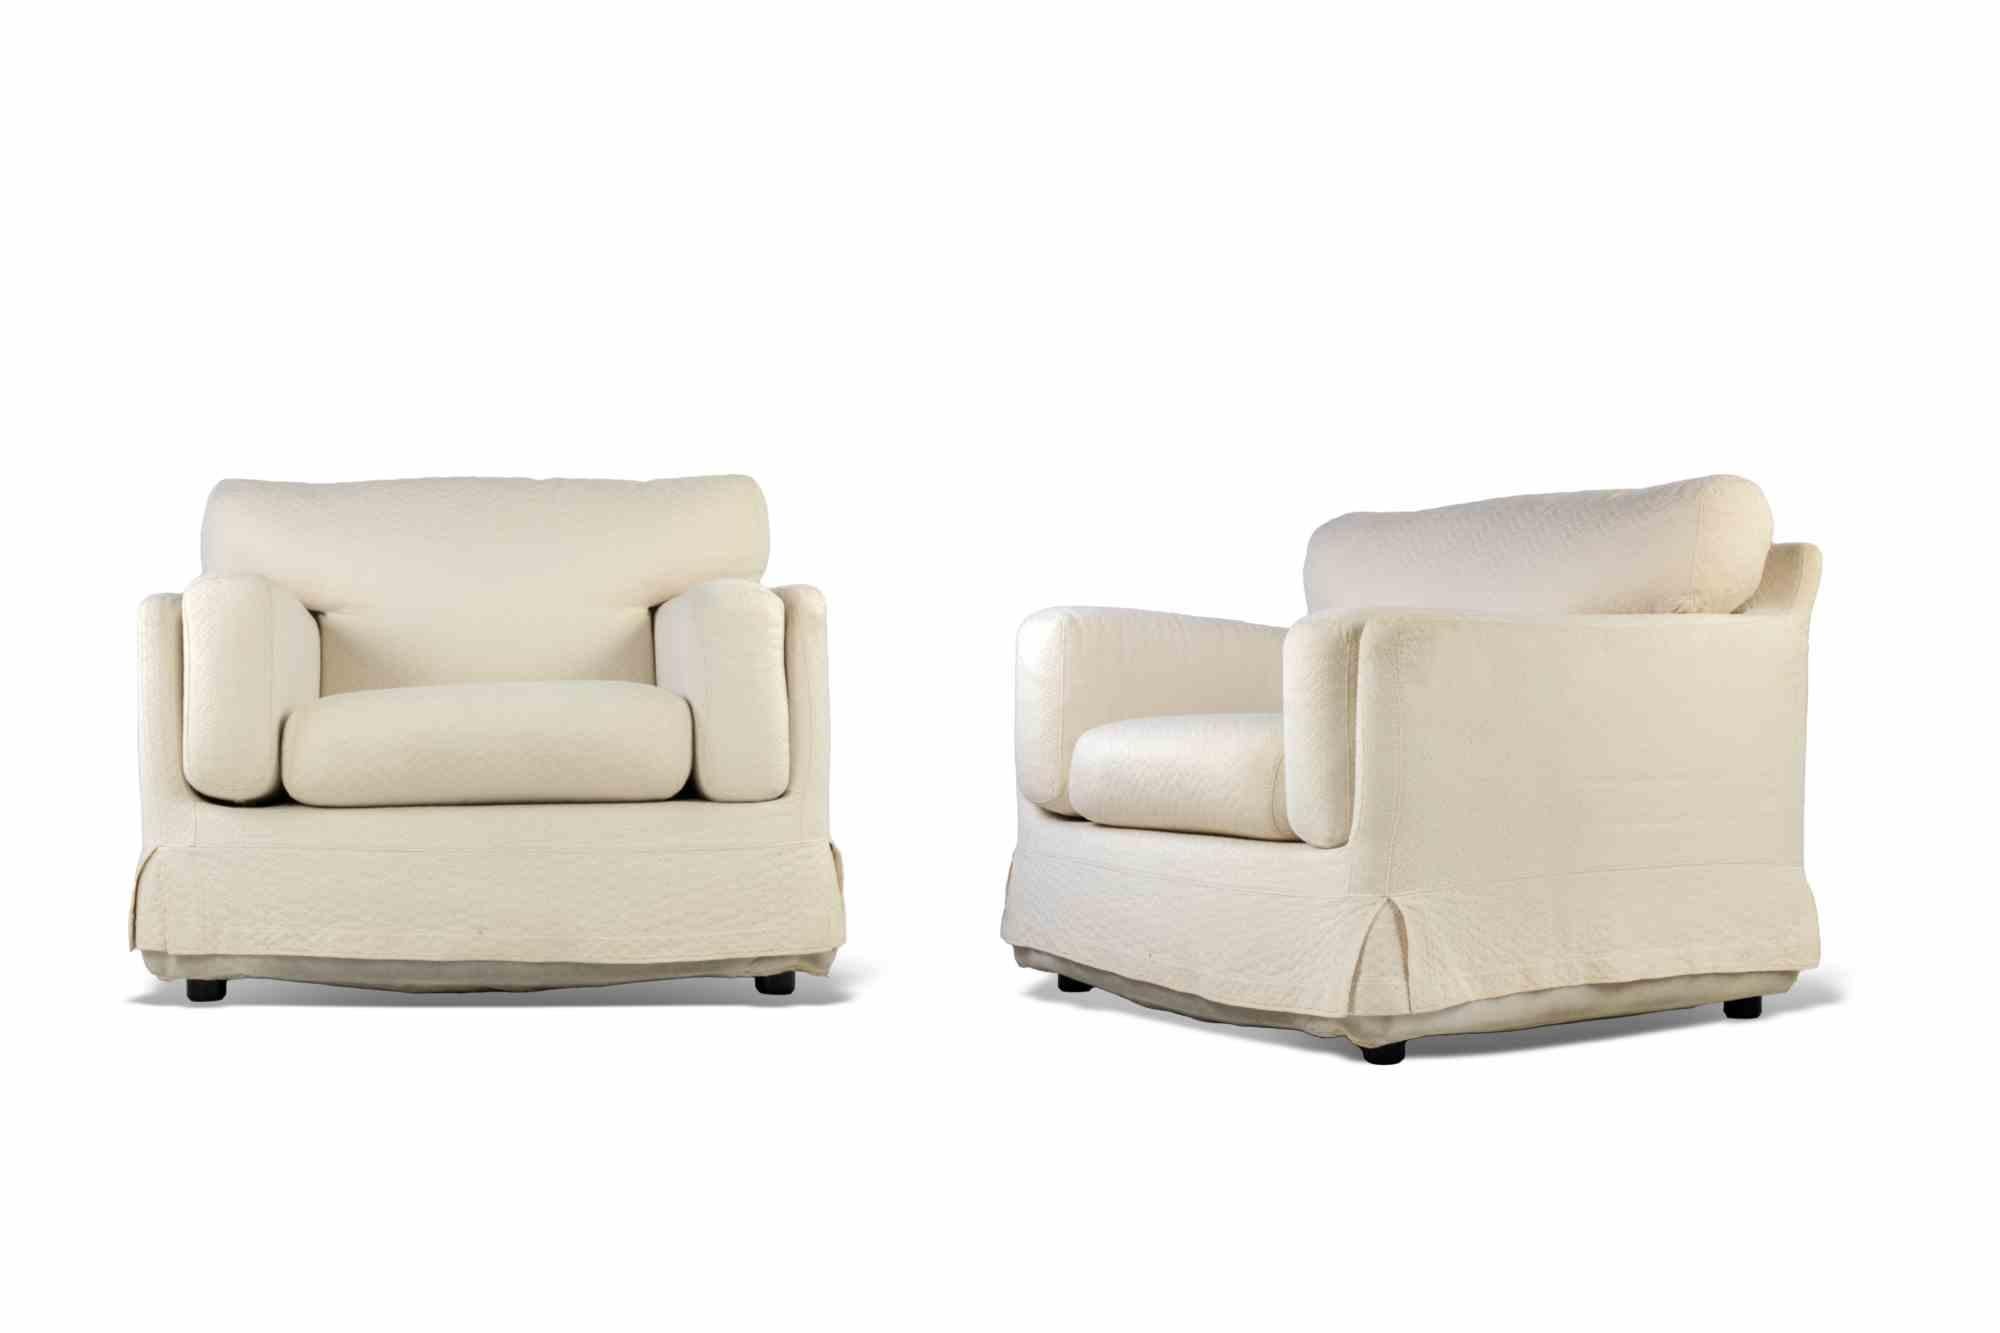 Vintage Sofa und Sessel Set ist ein 70er Jahre Set.

Weißer Originalstoff. 

Abmessungen: Sof, 220 L x 80 H x 90 T cm; Sessel L 102 x H 80 x 93 T cm.

Guter Zustand, leichtes Vergilben des Stoffes, bedingt durch die Zeit.      

